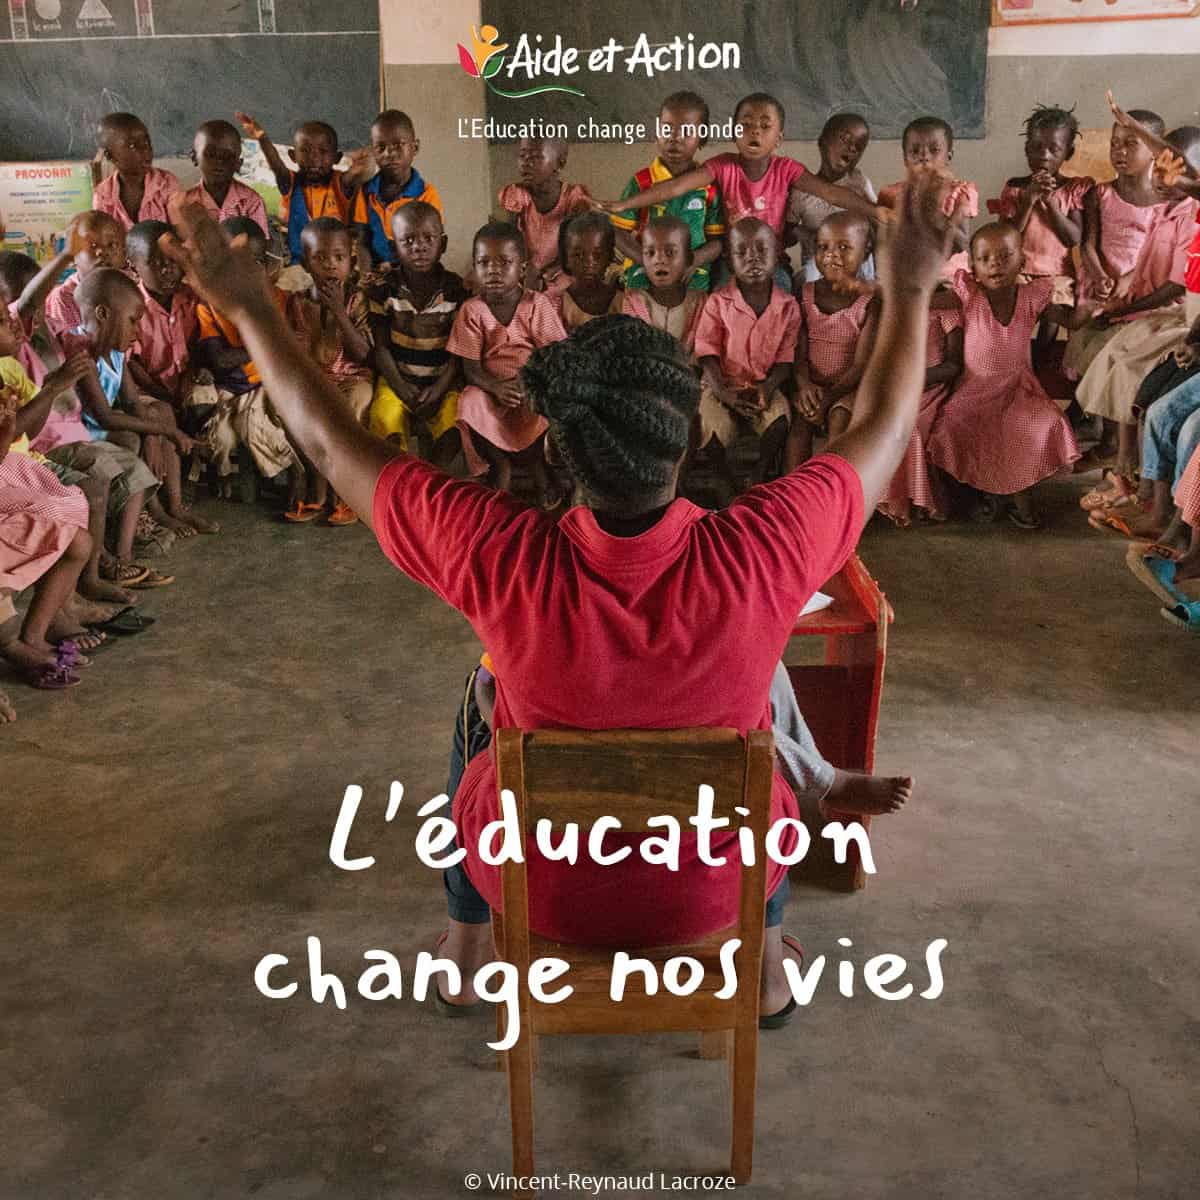 Aide et Action sensibilise à l’éducation, facteur de changement et de développement humain